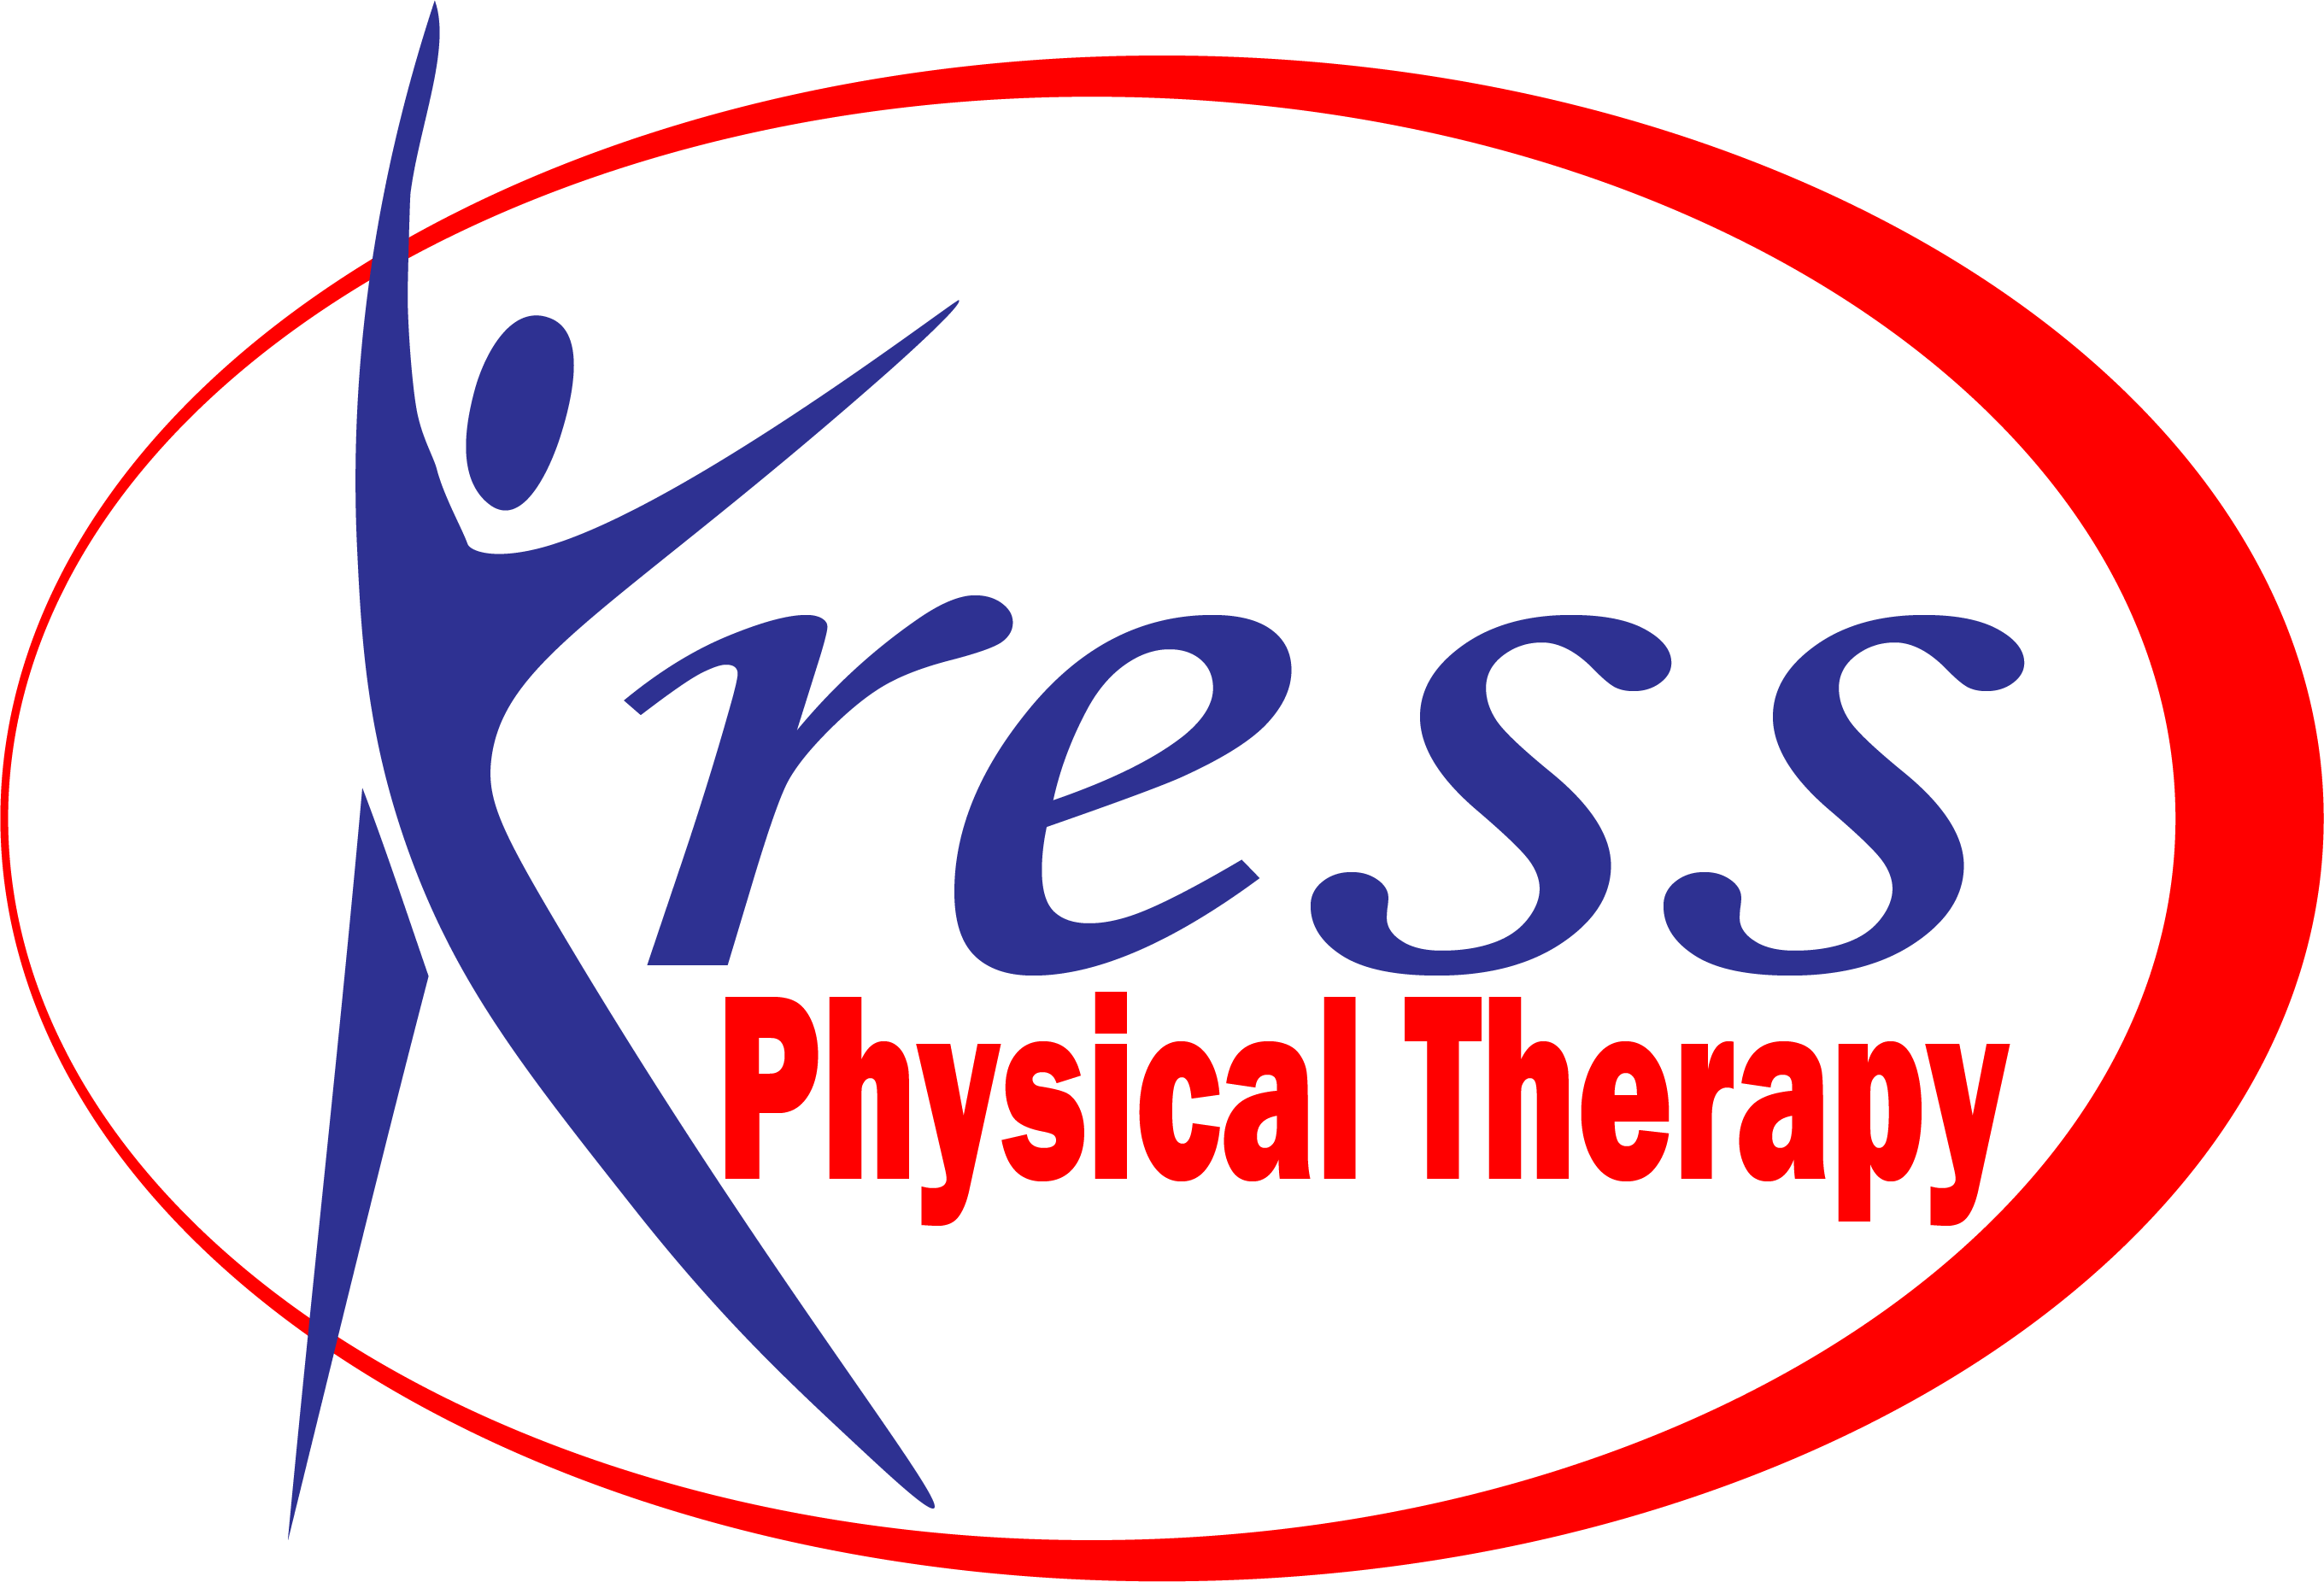 Kress Logo PNG